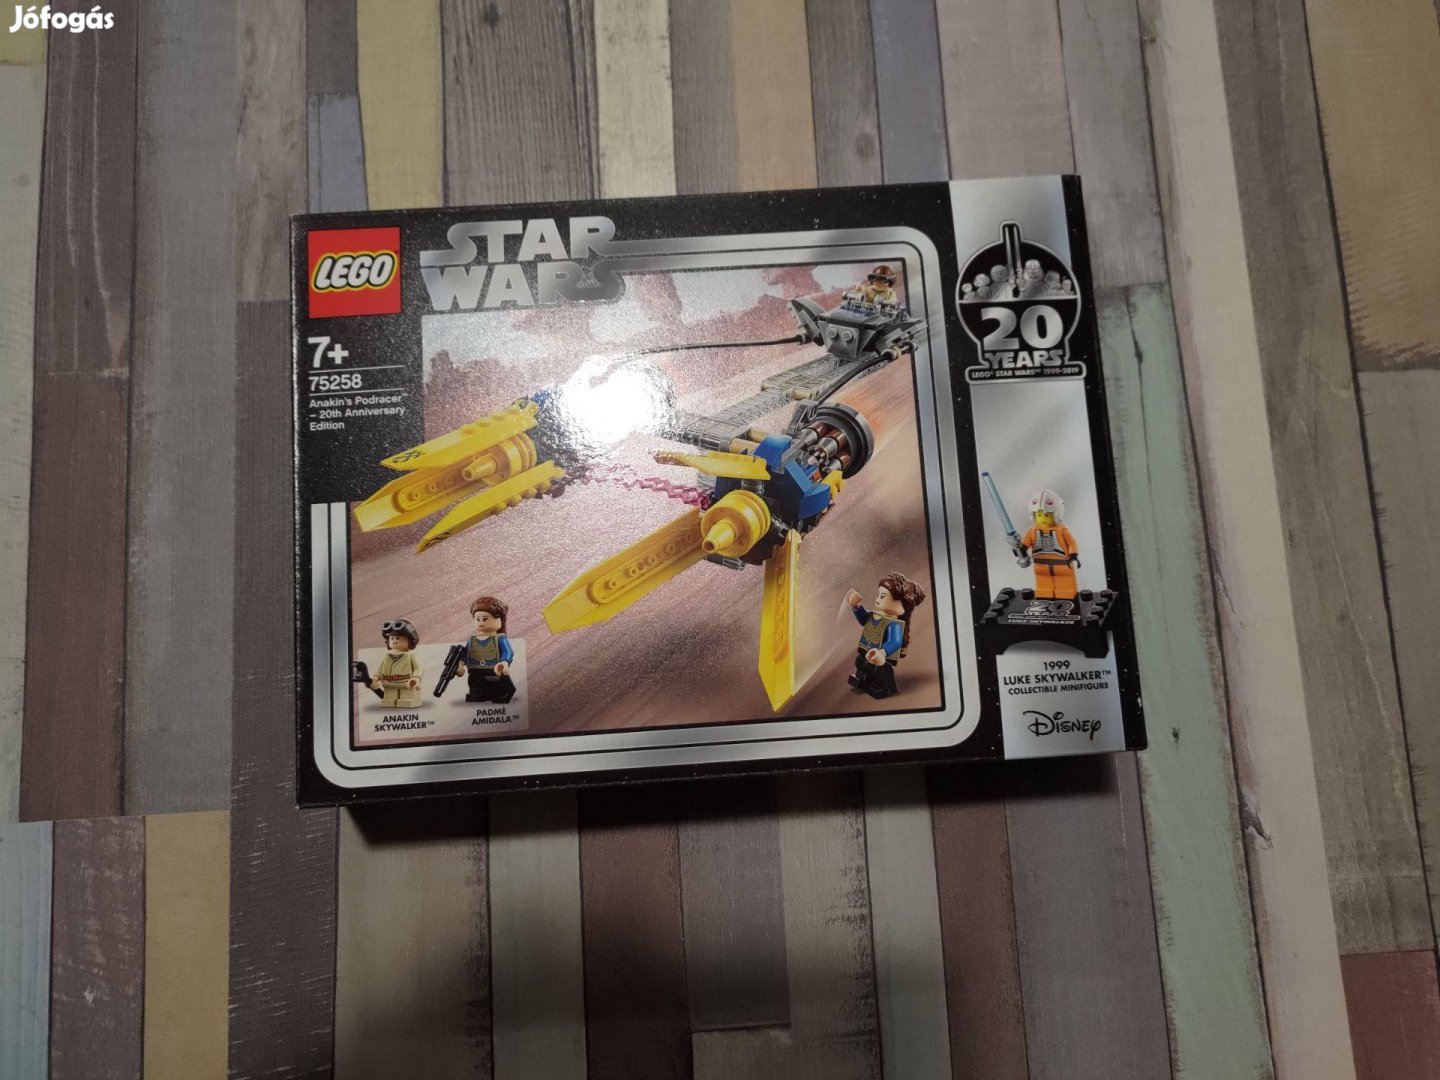 LEGO Star Wars - Anakin fogata 20. évfordulós kiadás (75258)